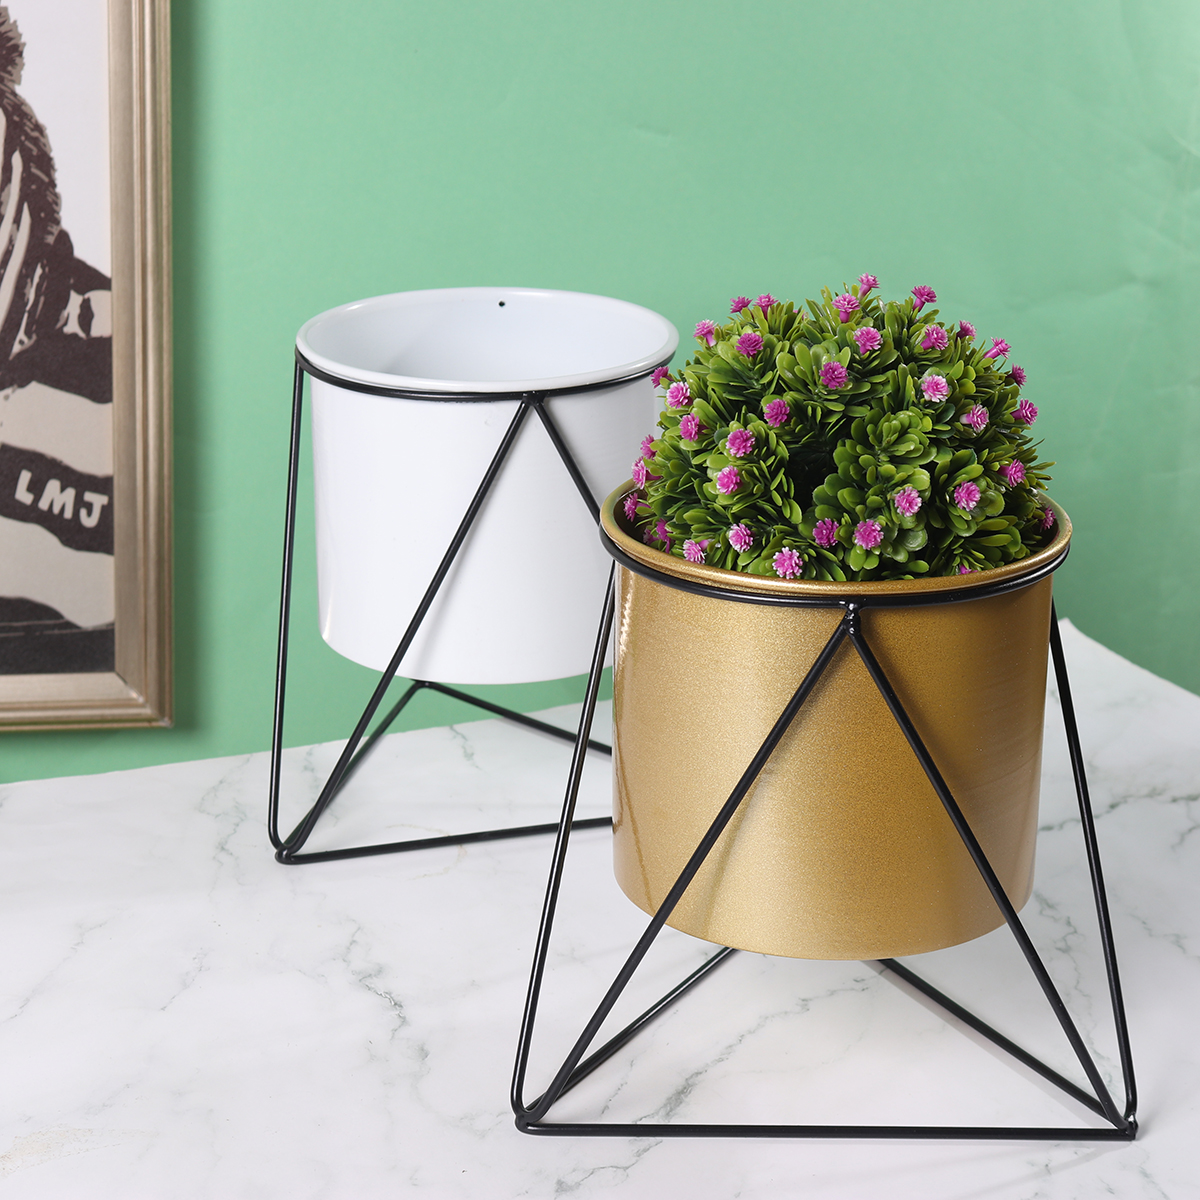 Metal-Flower-Pot-Stand-Indoor-Outdoor-Garden-Balcony-Desktop-Plant-Rack-Iron-Flower-Pot-Shelf-Home-O-1787537-3